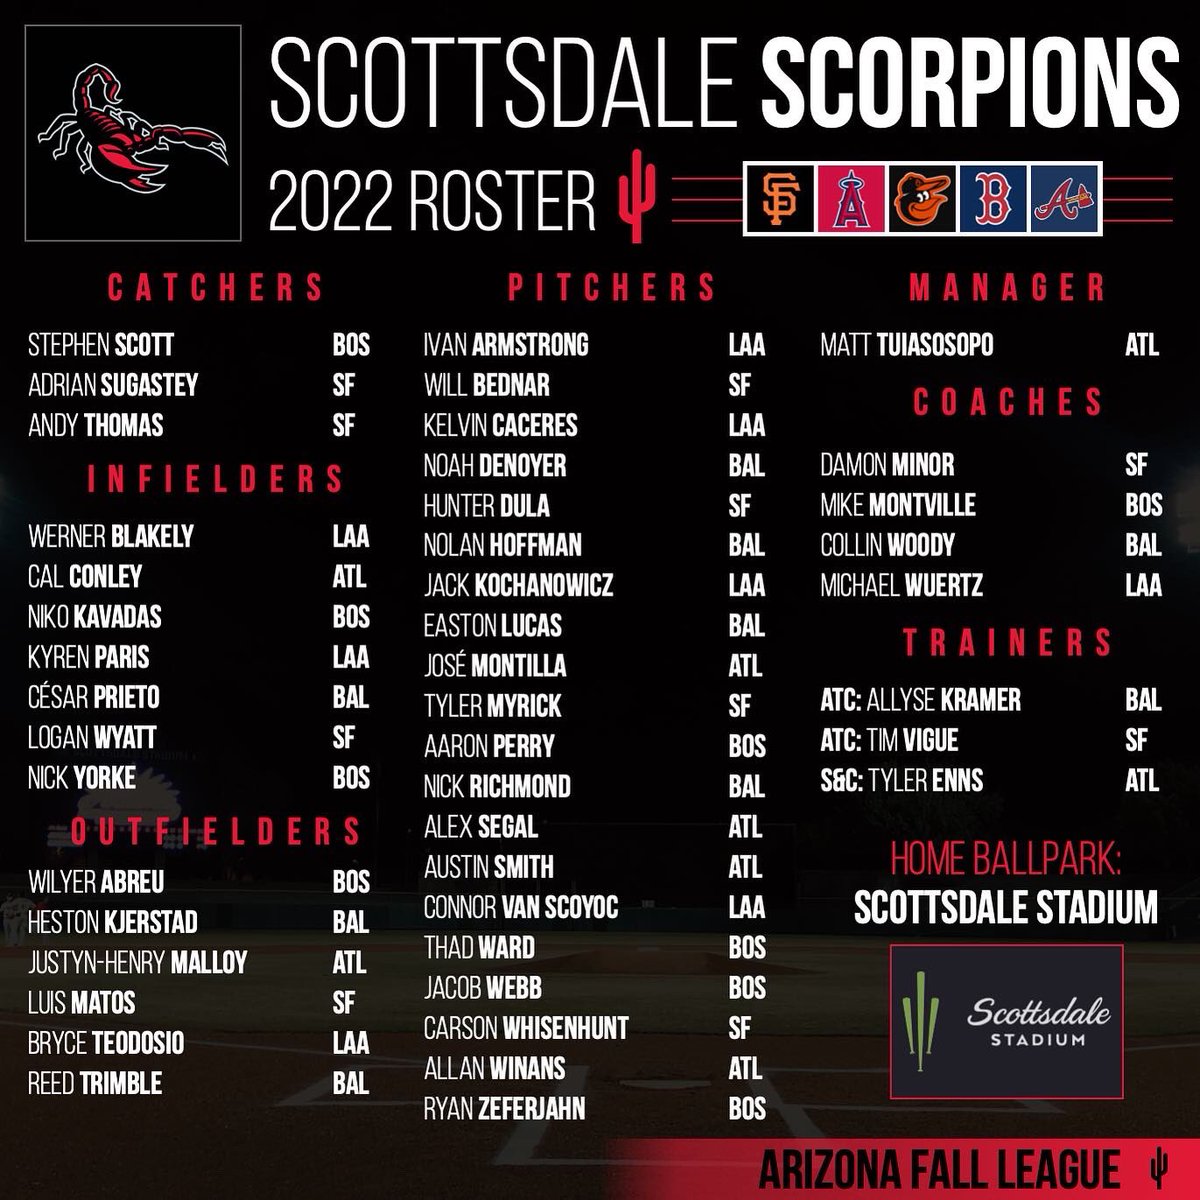 2022 SCOTTSDALE SCORPIONS 🦂 📍Scottsdale Stadium (@scottsdaleazgov) - @SFGiants - @Angels - @Orioles - @RedSox - @Braves